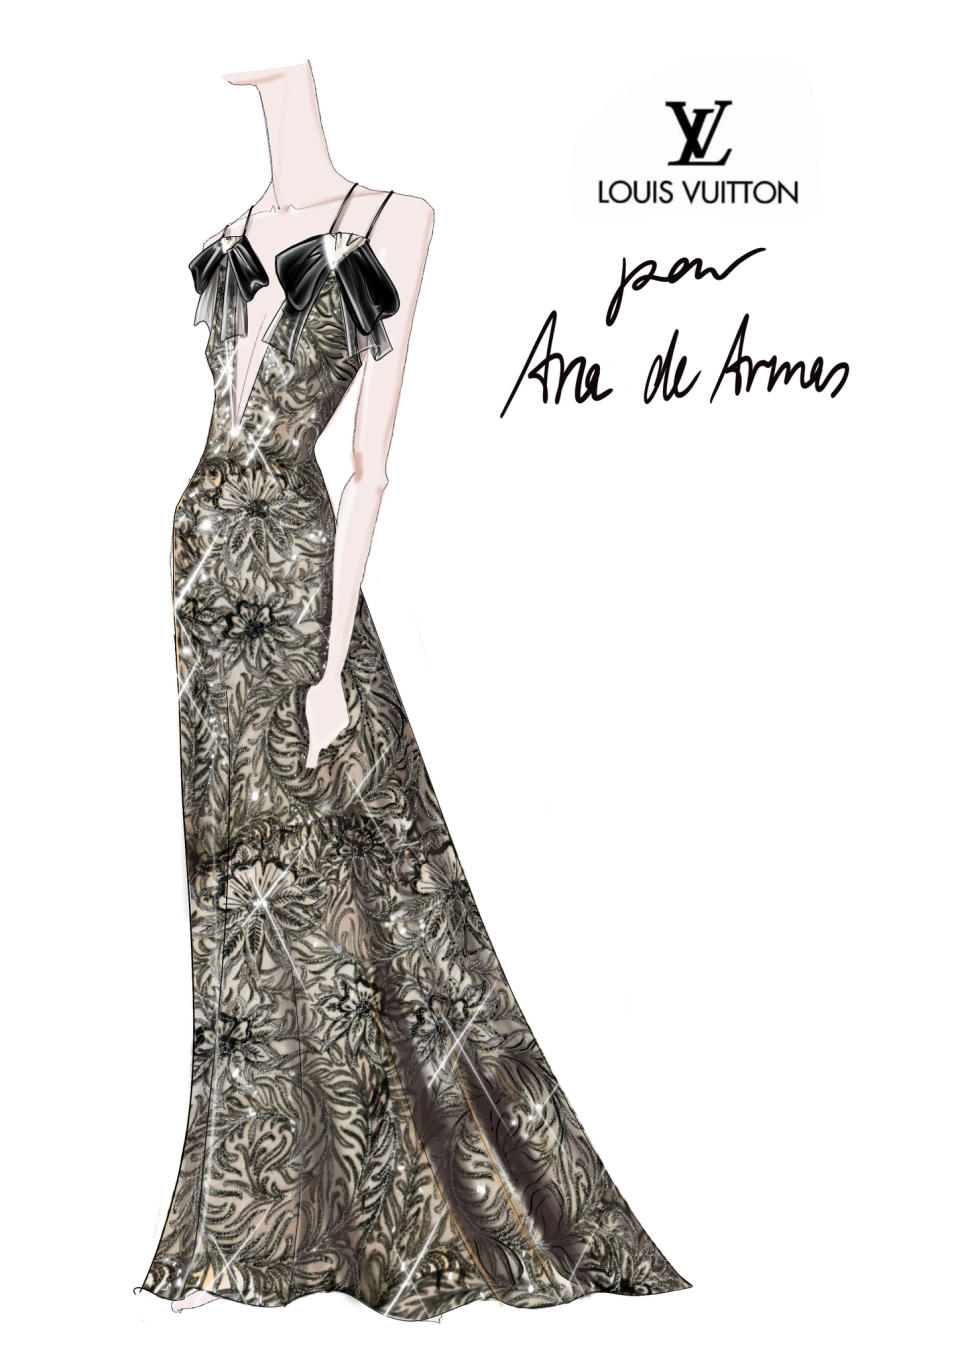 A sketch of Ana de Armas’ SAG Awards look.